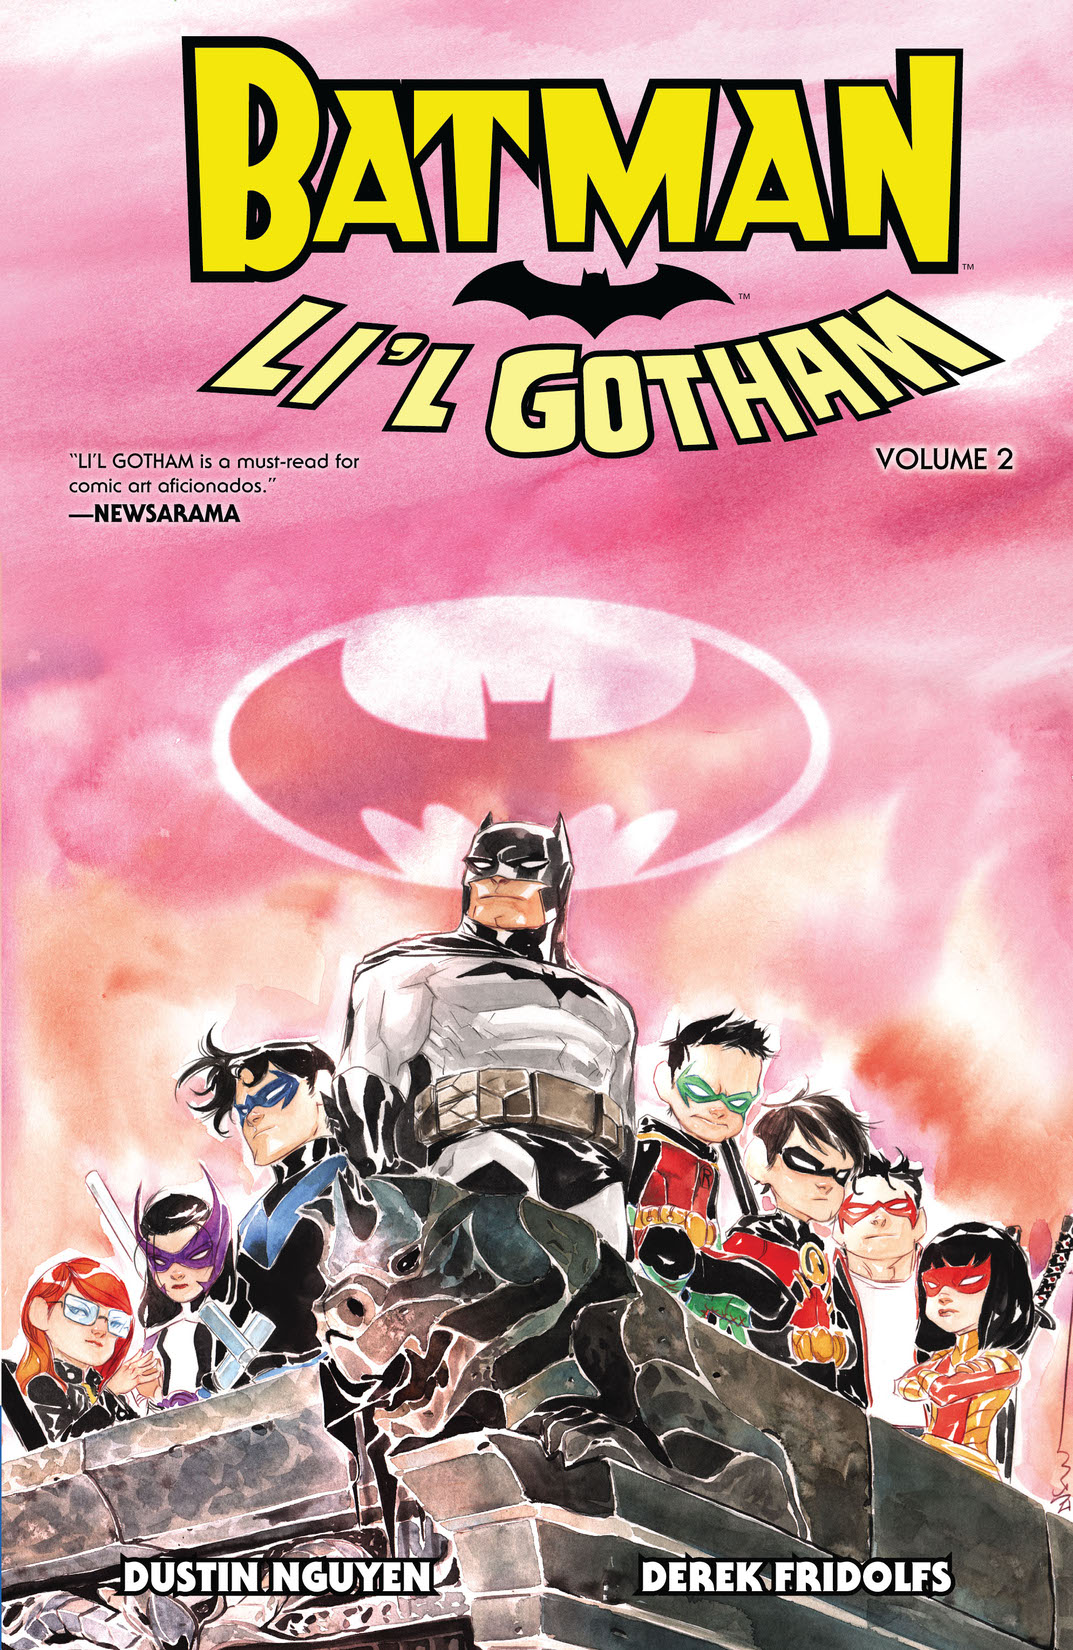 Batman: Li'l Gotham Vol. 2 preview images